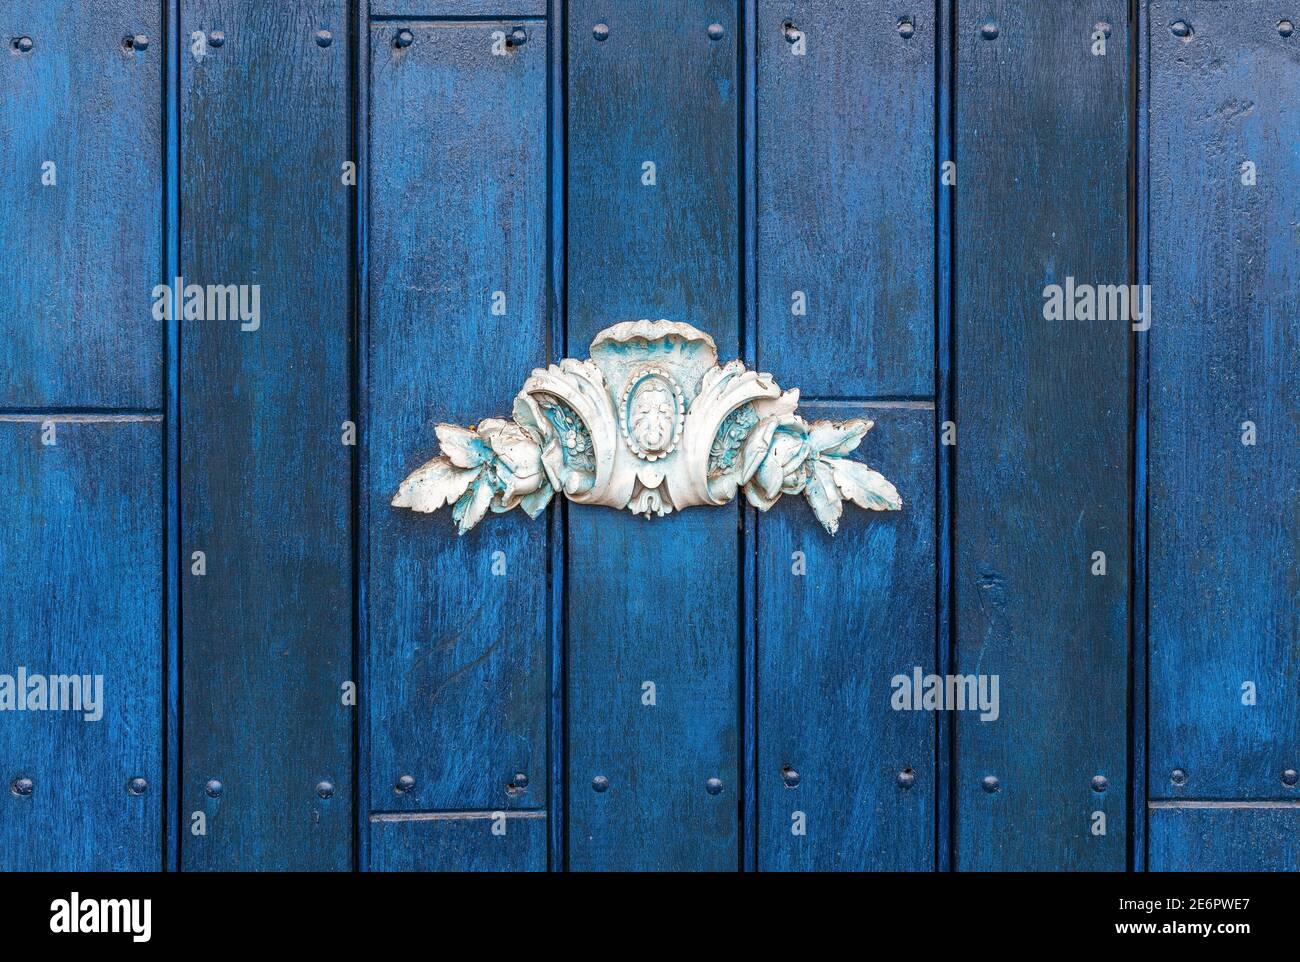 Ceramic decoration on blue door, Quito, Ecuador. Stock Photo